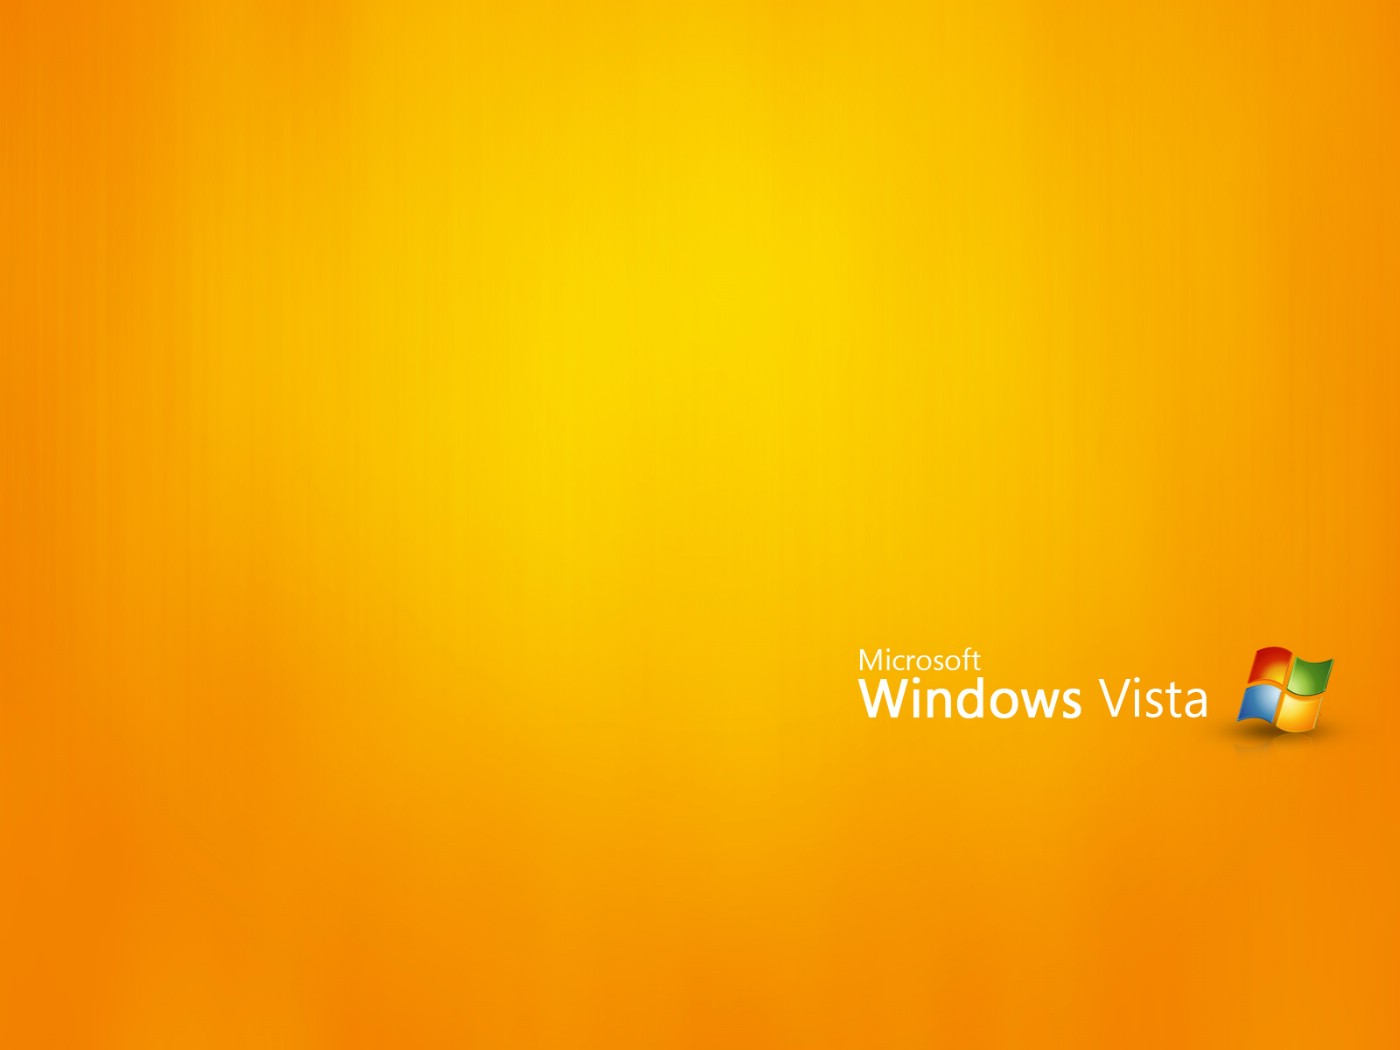 壁纸1400x1050Windows Vista壁纸 壁纸16壁纸 Windows Vista壁纸壁纸 Windows Vista壁纸图片 Windows Vista壁纸素材 系统壁纸 系统图库 系统图片素材桌面壁纸